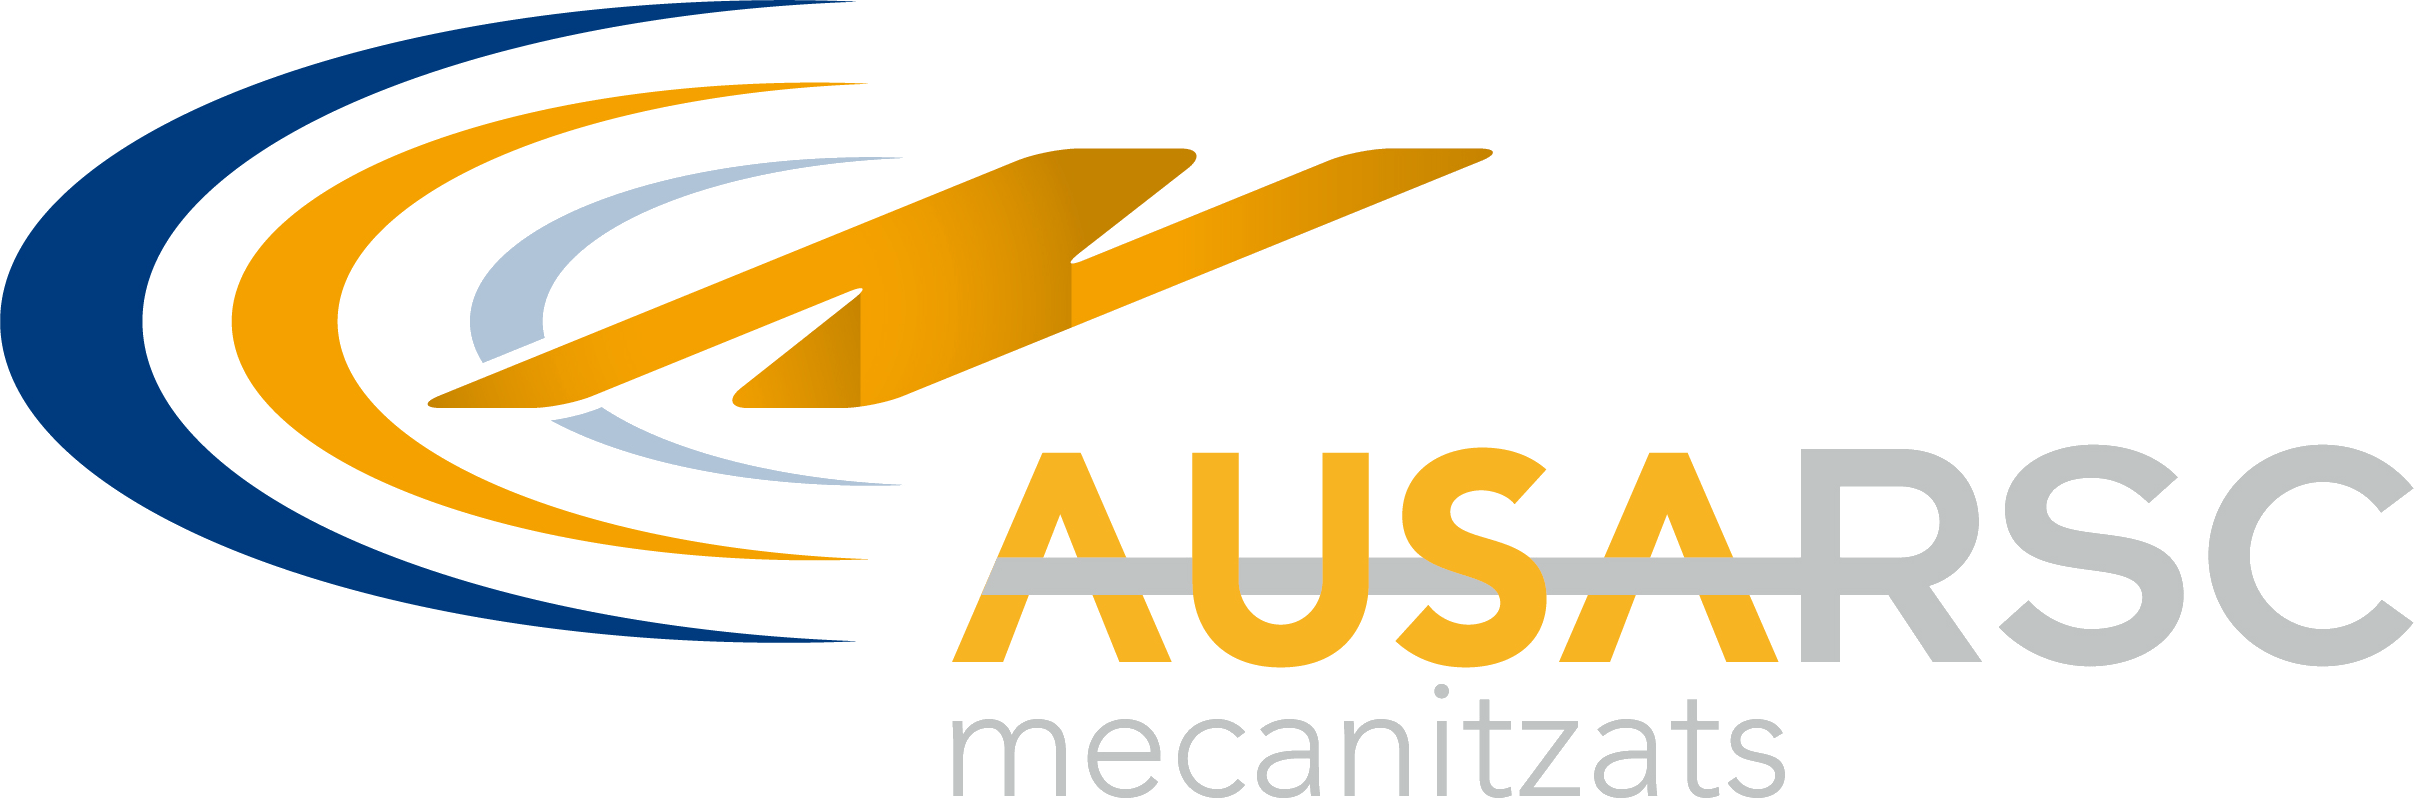 Ausa Logo - Logo Ausa - RSC Grupo